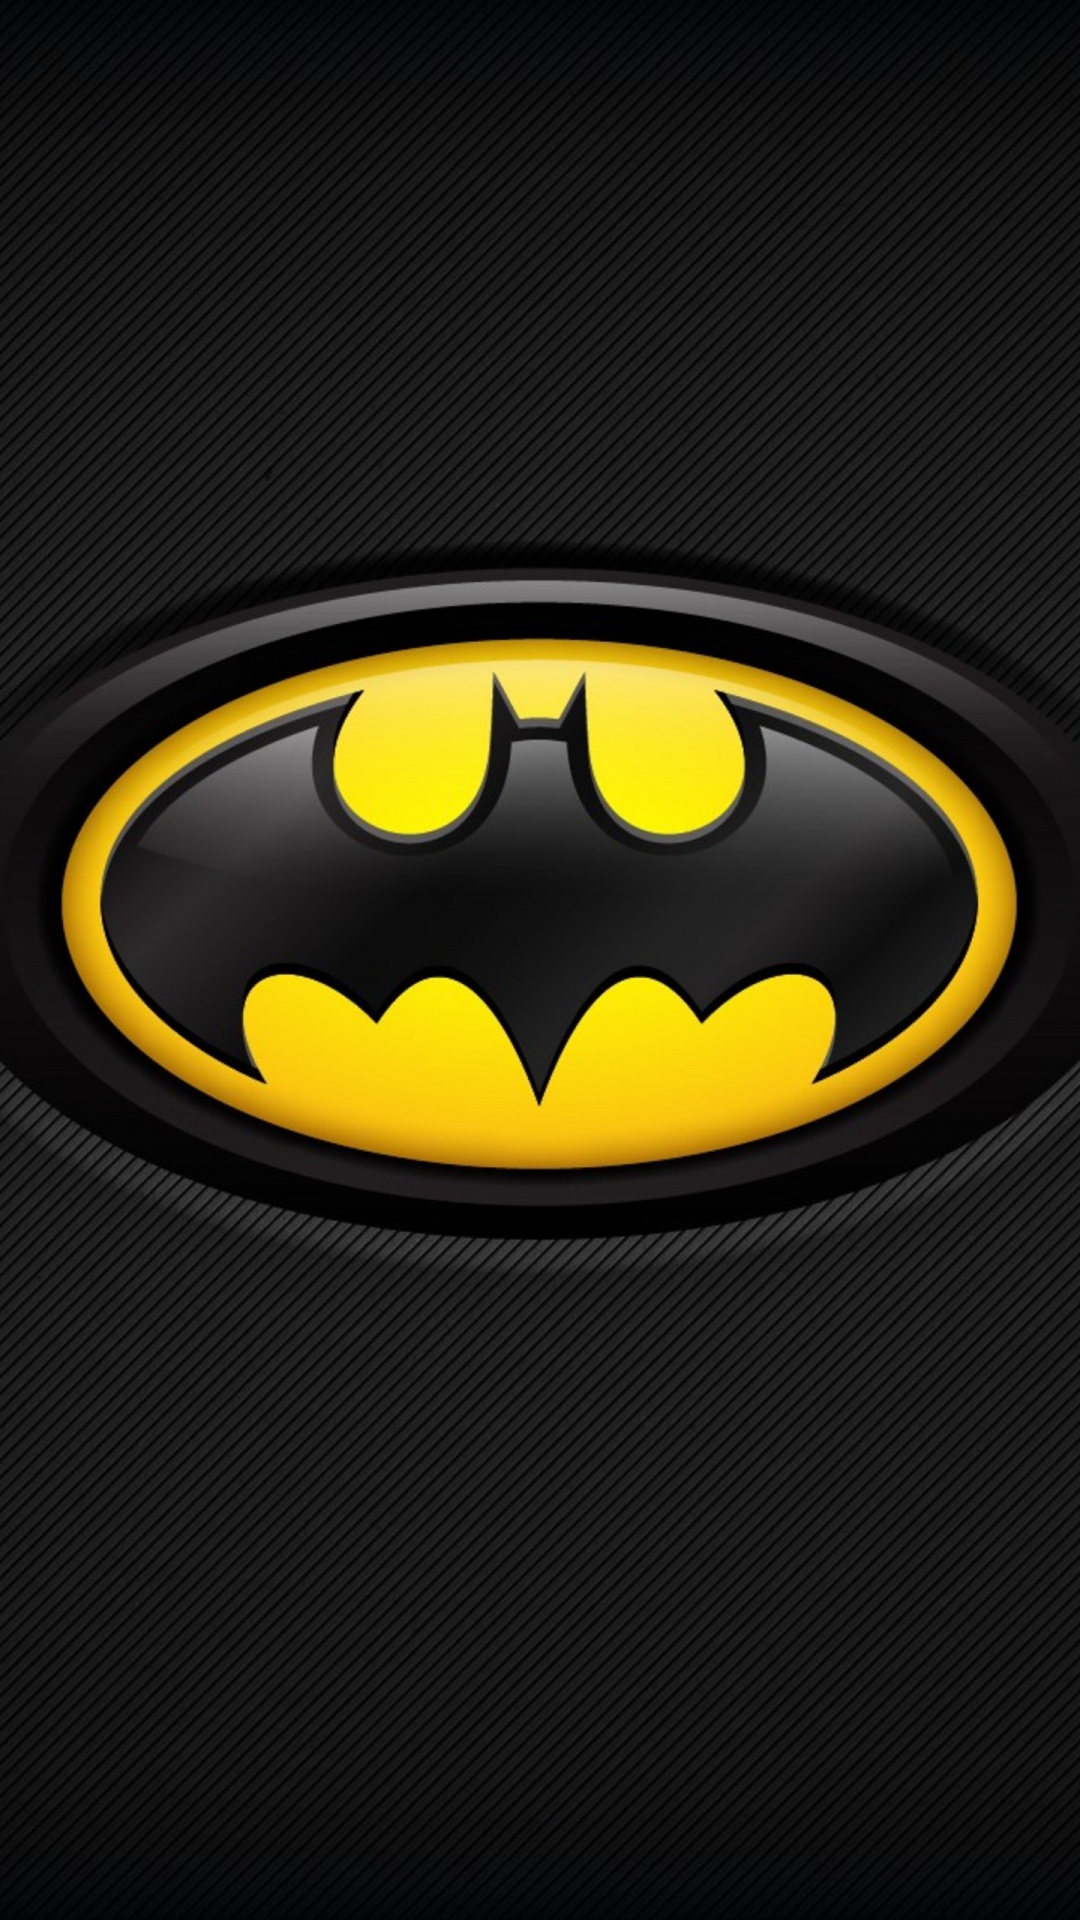 Schwarz-gelbes Batman-Logo. Wallpaper in 1080x1920 Resolution